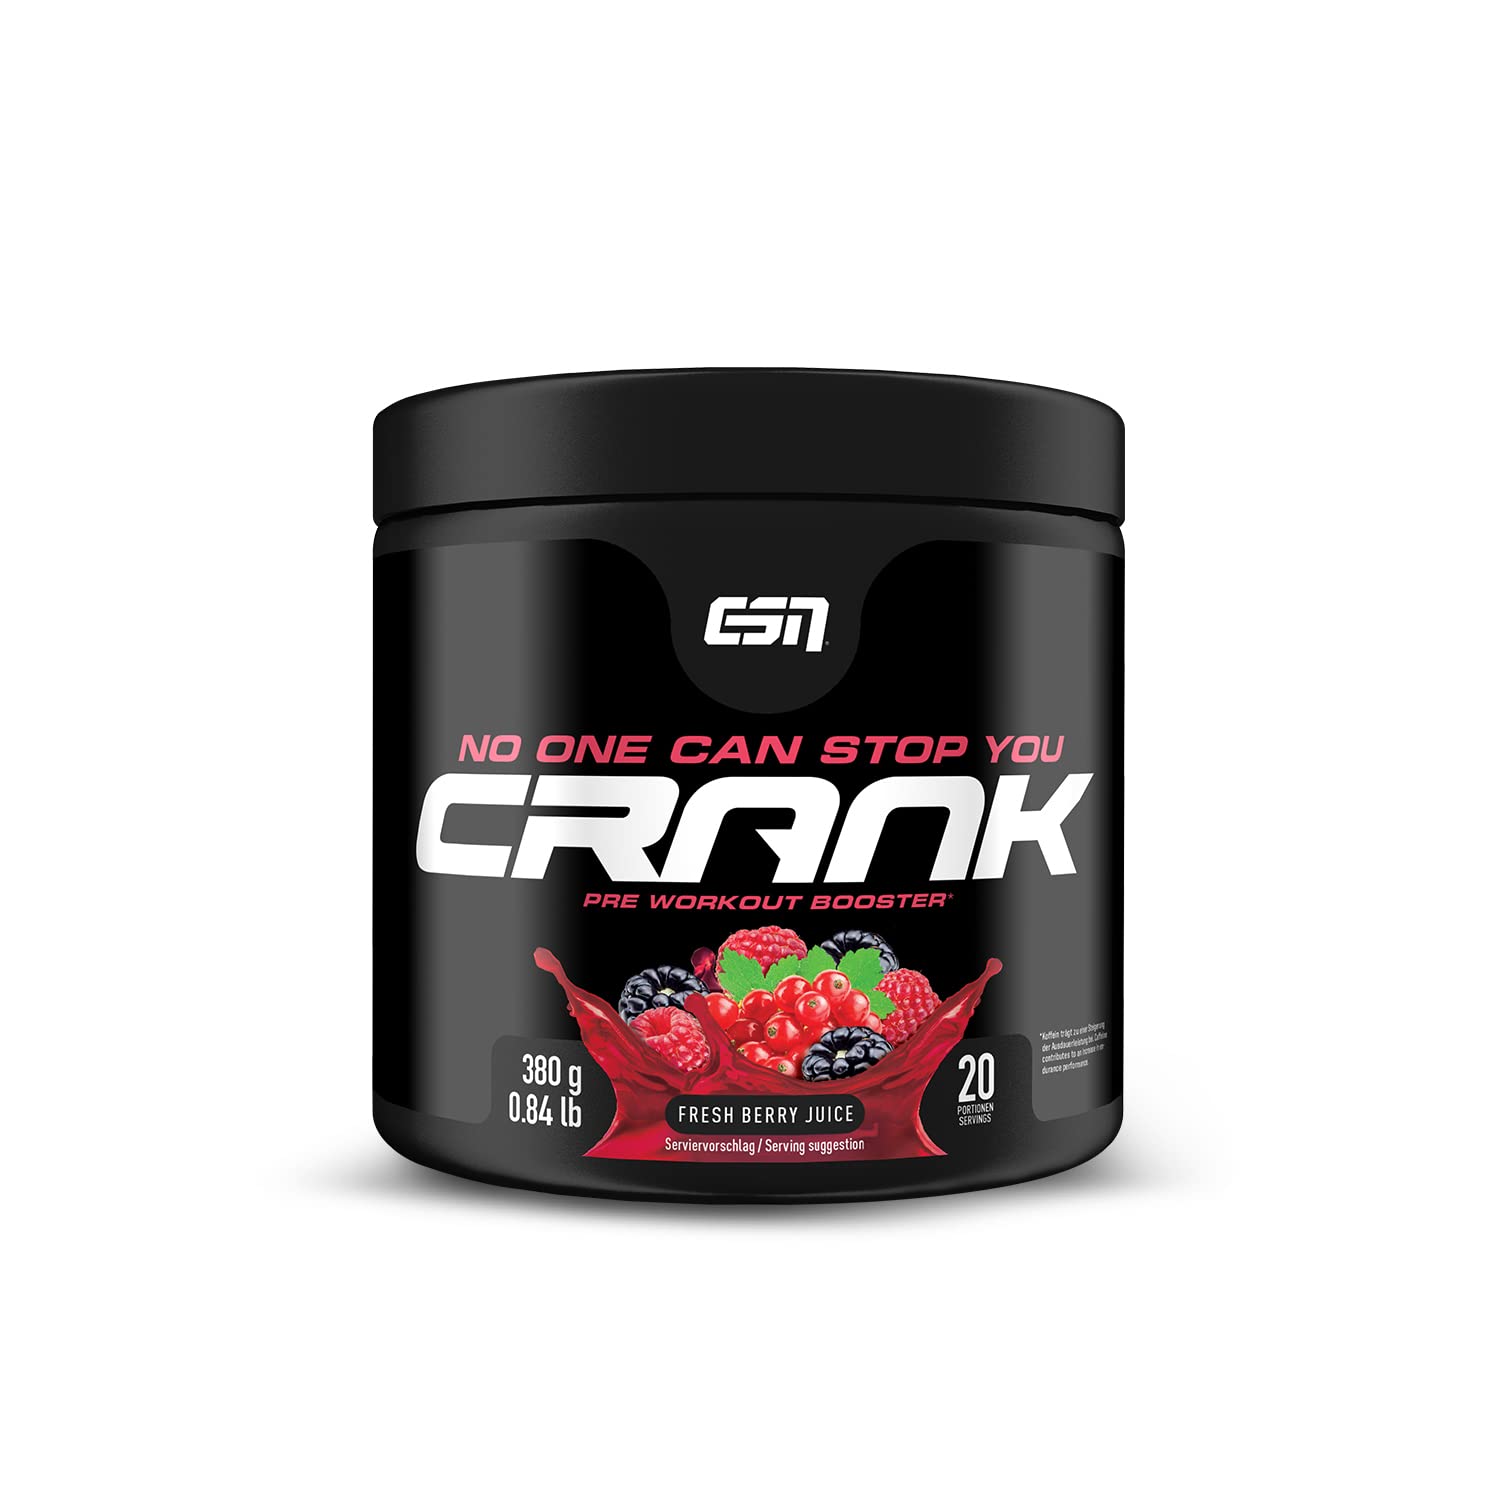 ESN Crank 380g - Pre workout Booster  Fitness-Planet24 -  Nahrungsergänzungsmittel für alle Bereiche